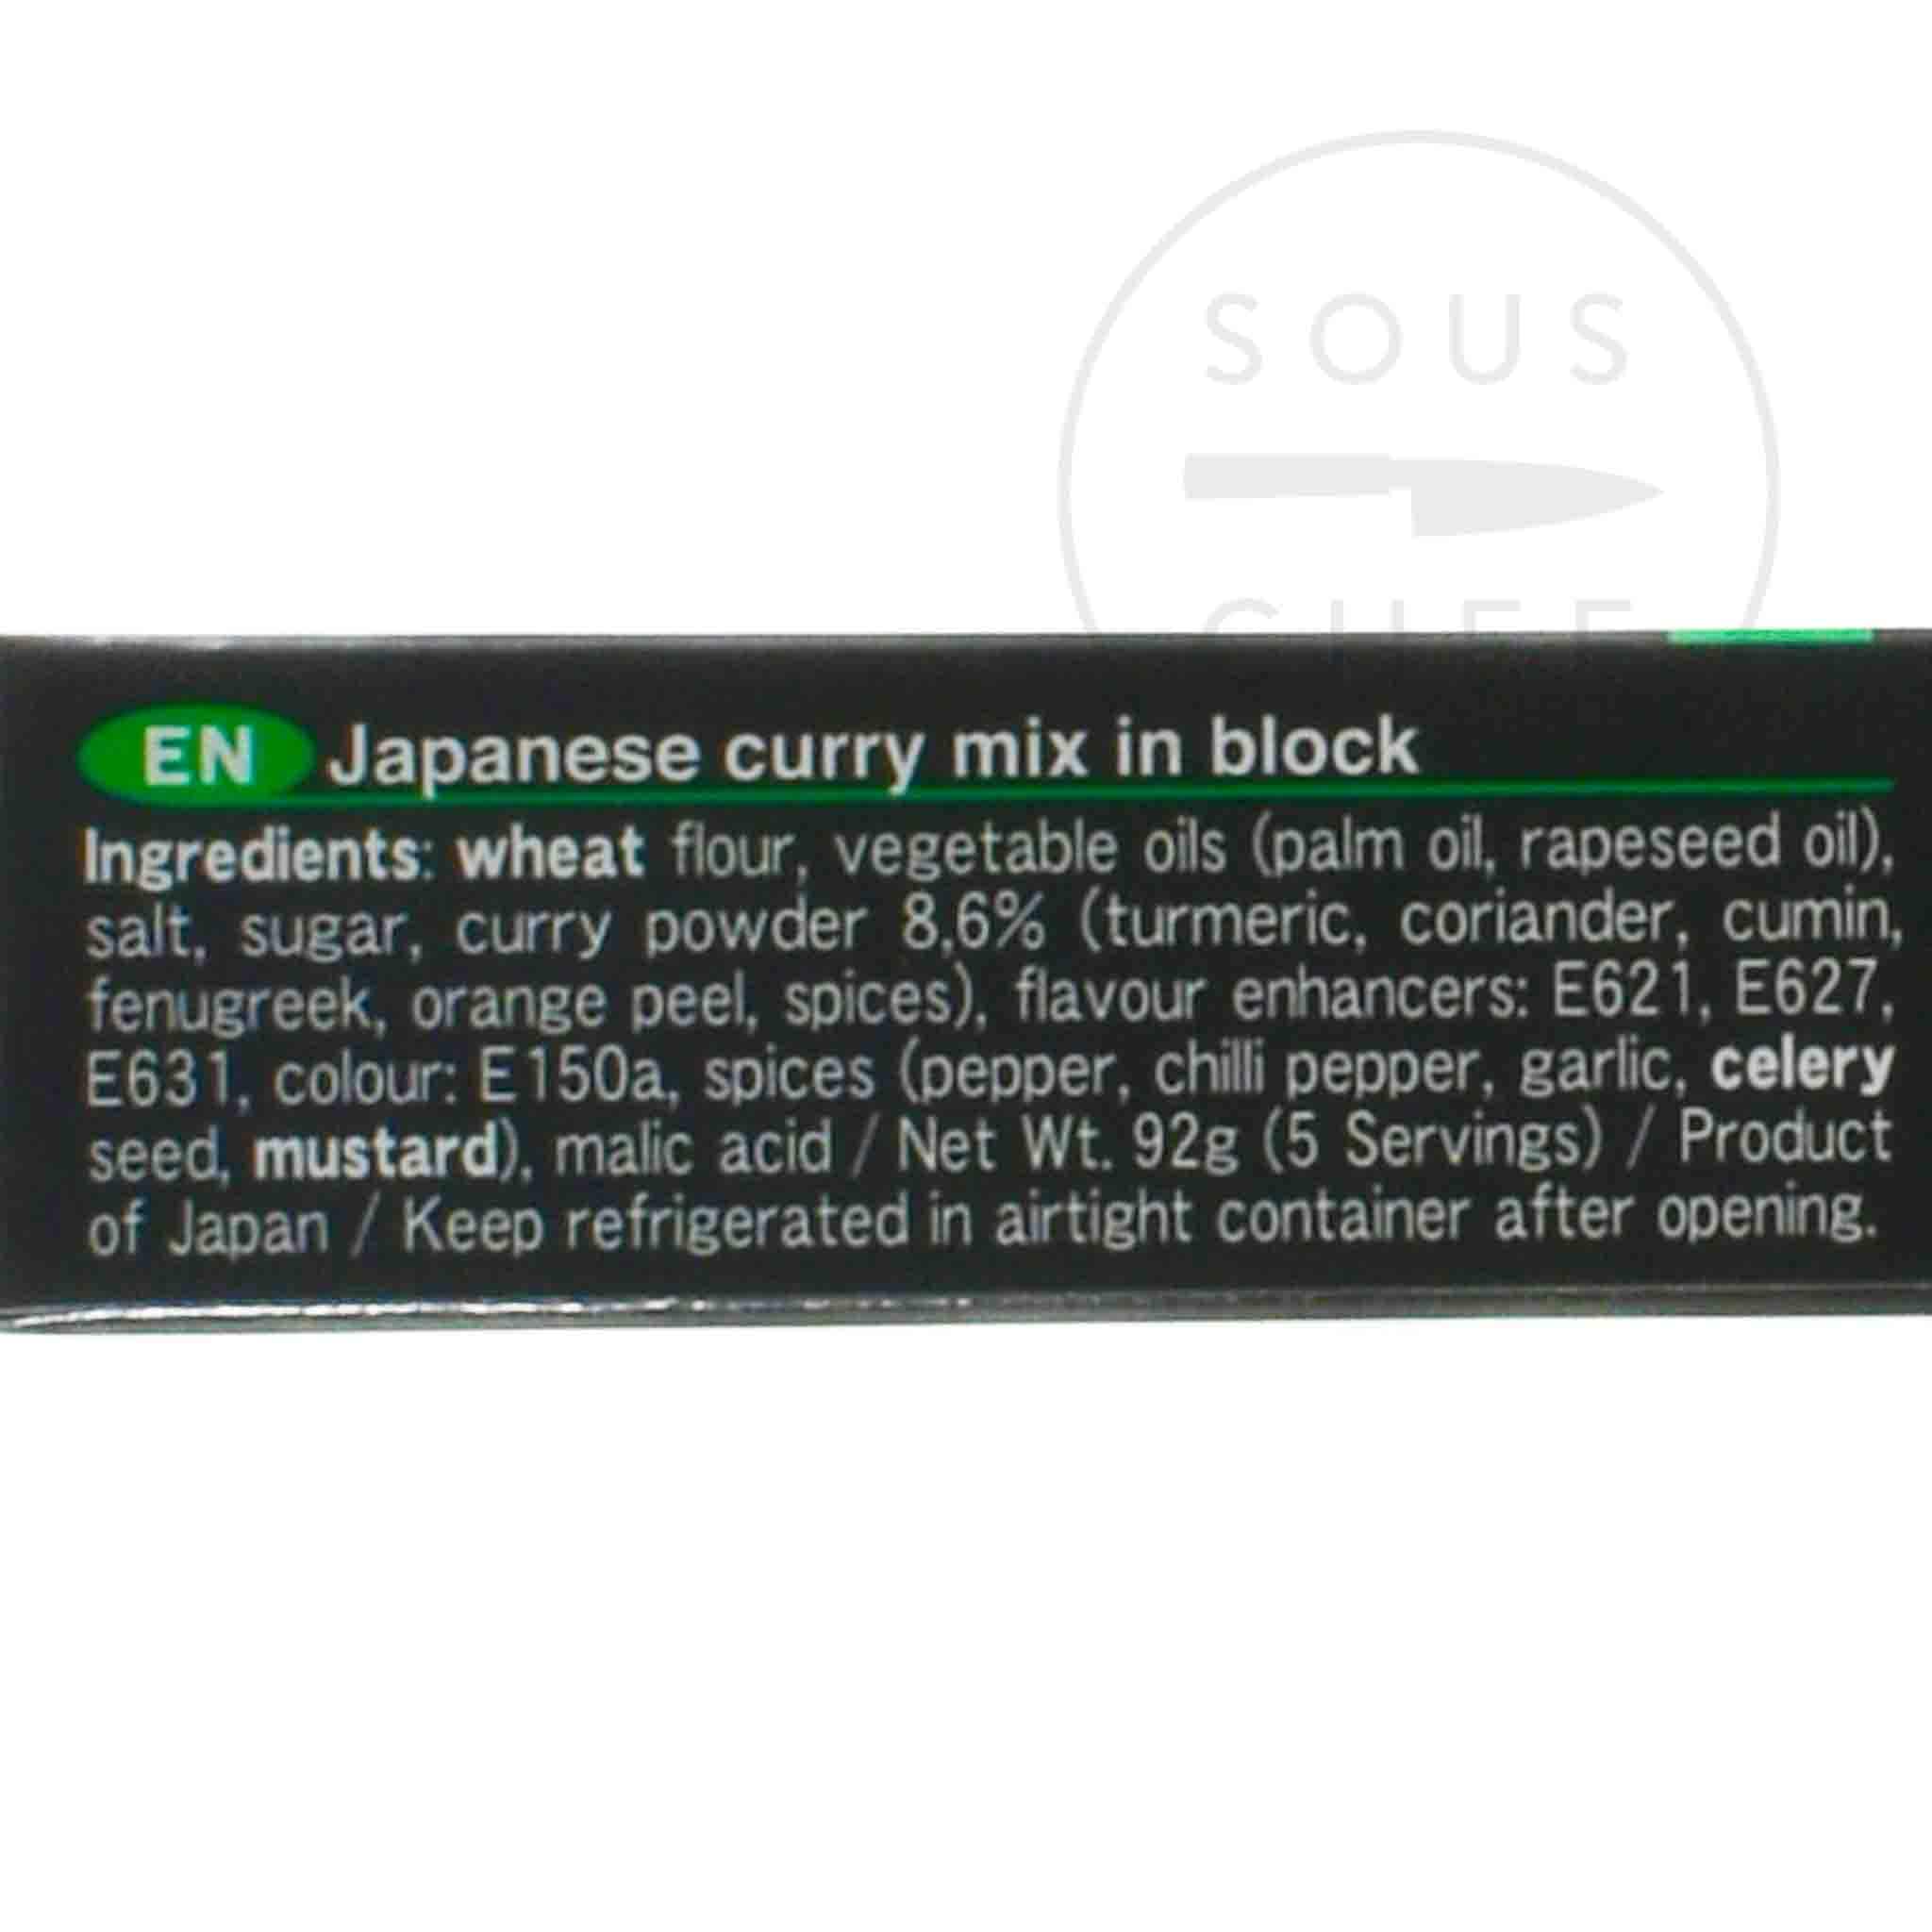 S&B Golden Curry Sauce Mix 92g